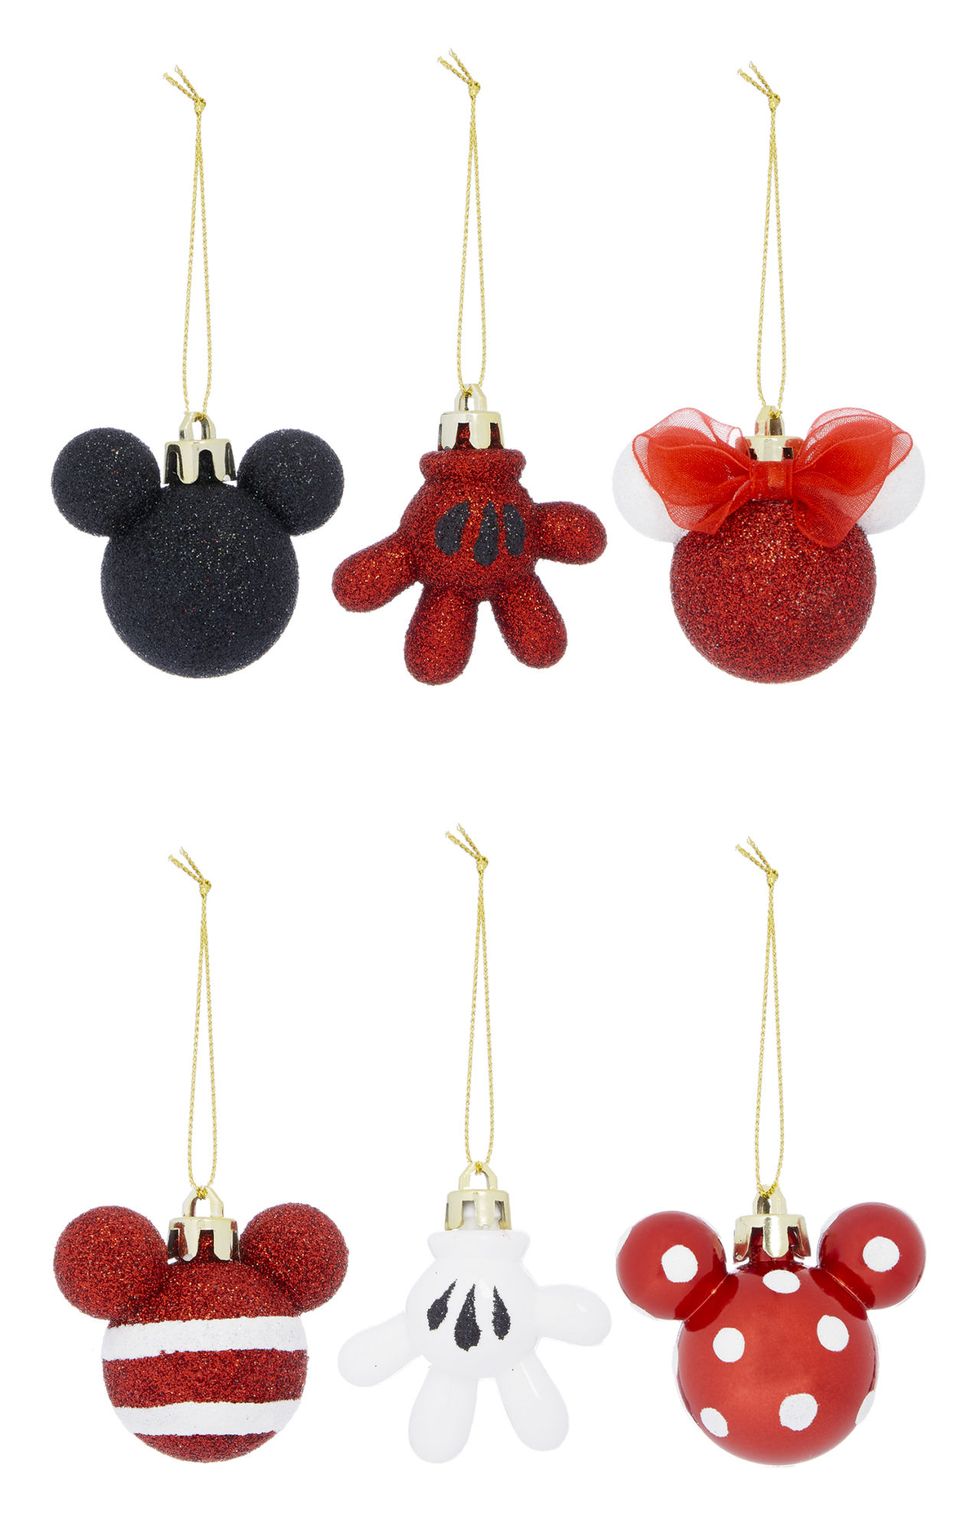 Kimball-3188101-Mickey and Minnie 4PK Decorations, Grade ROI  G, FRIT J, IB E, WK 4, E5.jpg